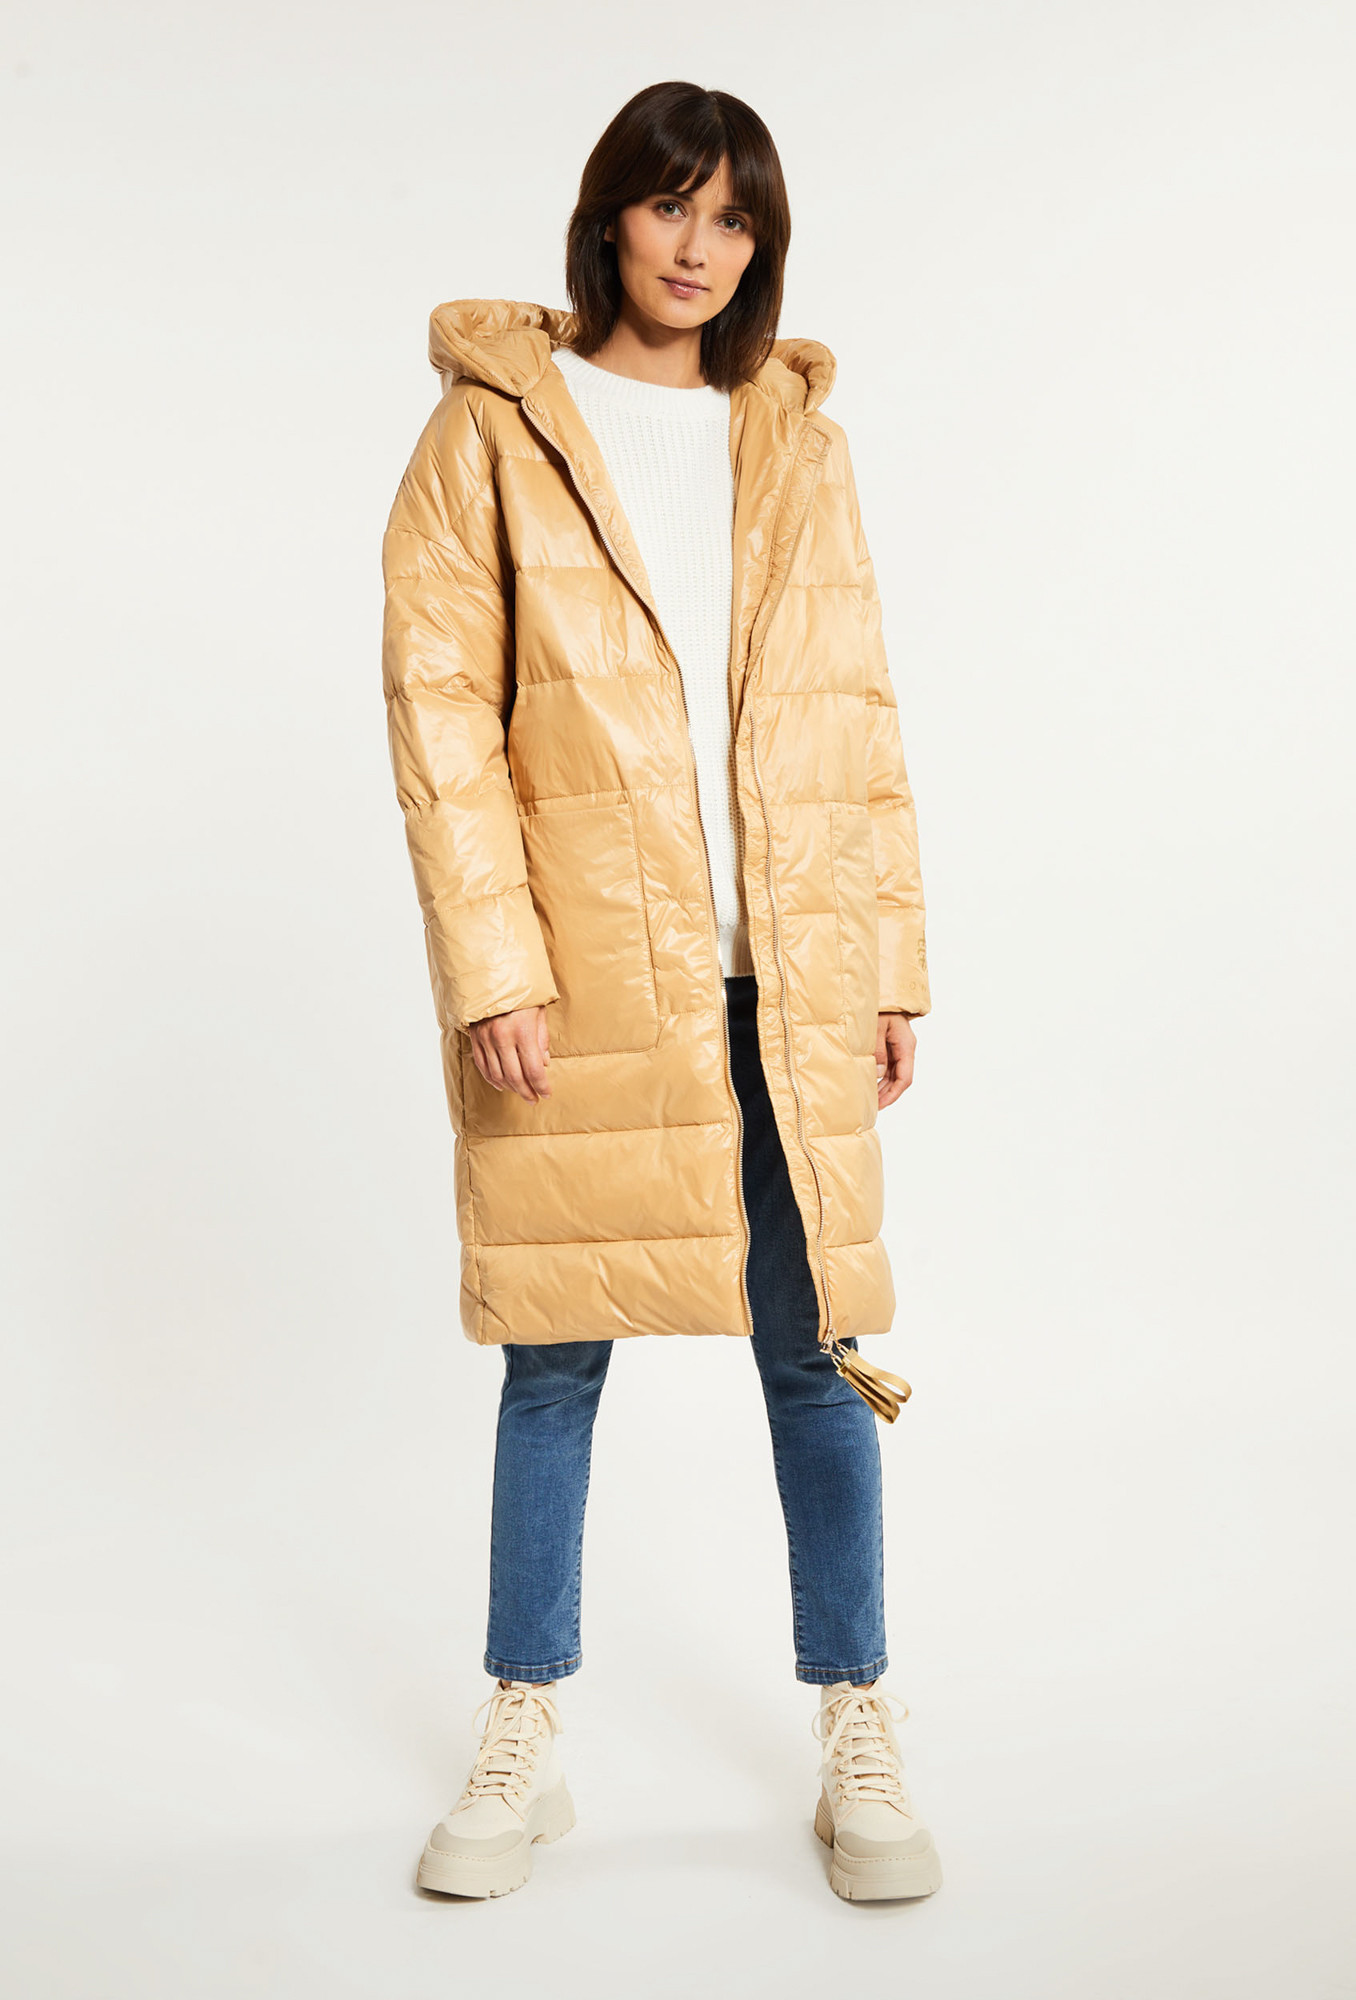 Monnari Kabáty Péřový prošívaný kabát s kapucí Light Beige 46